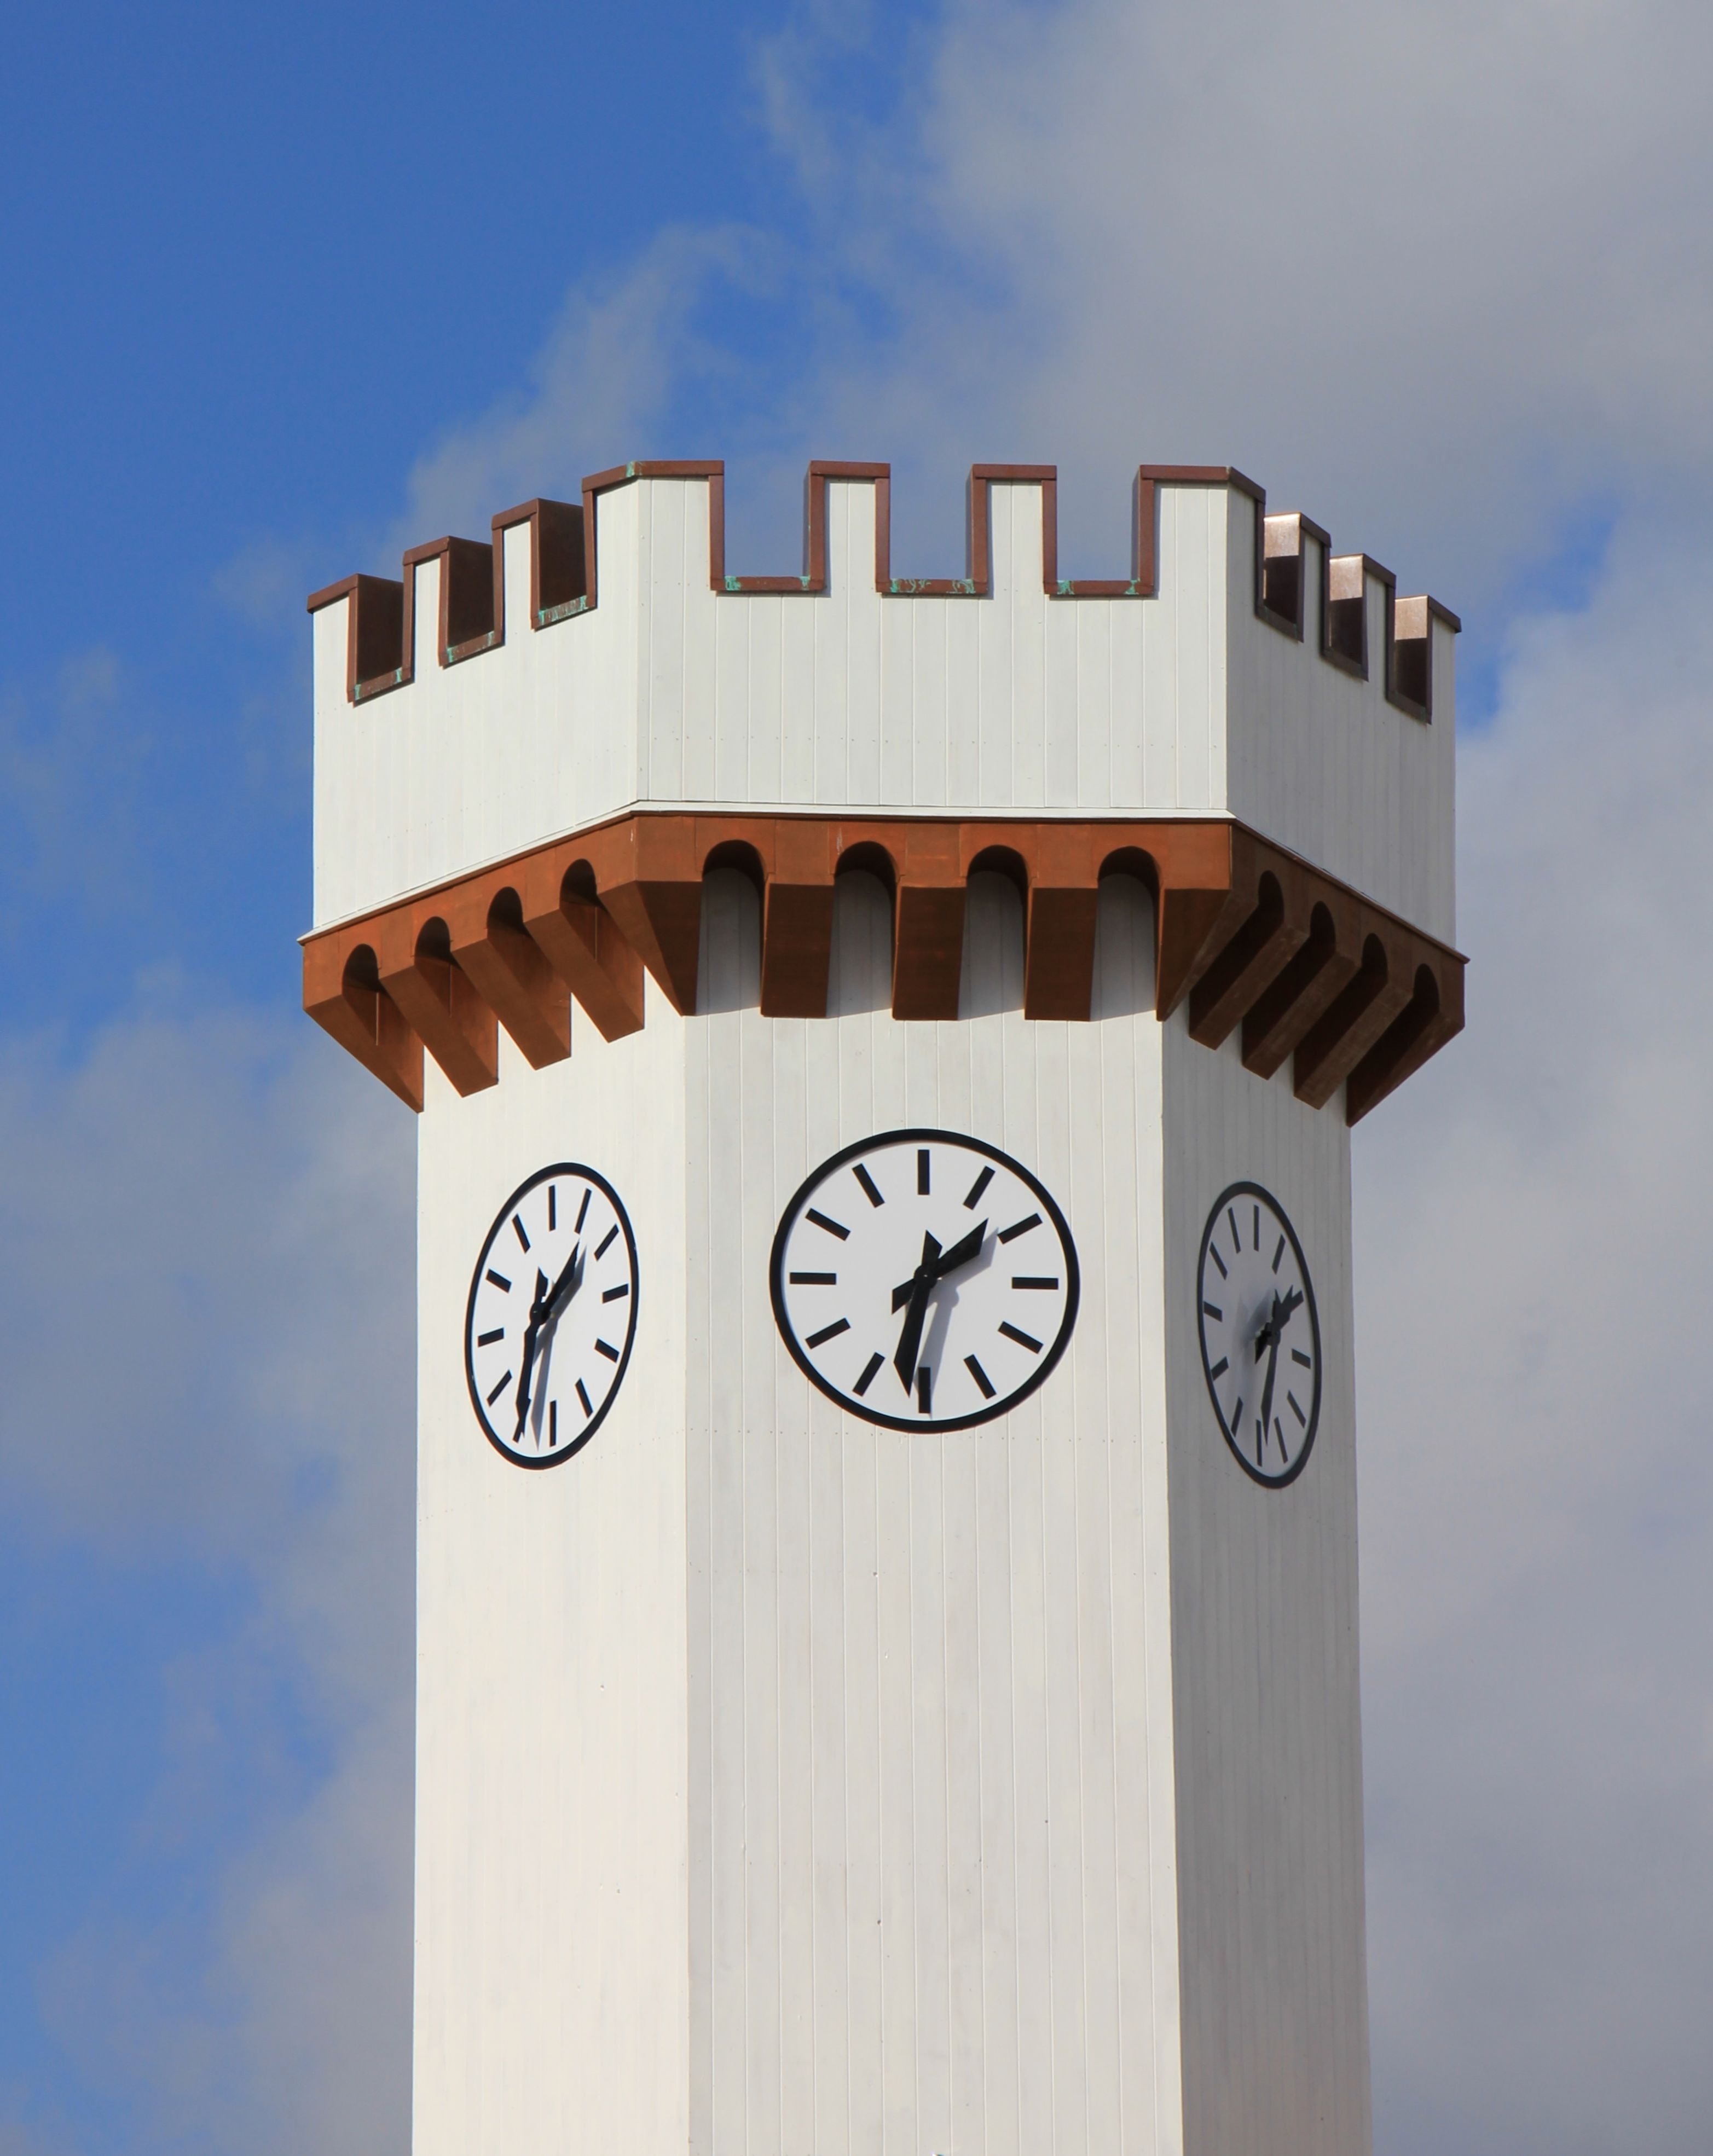 Clock tower at 1:30 photo